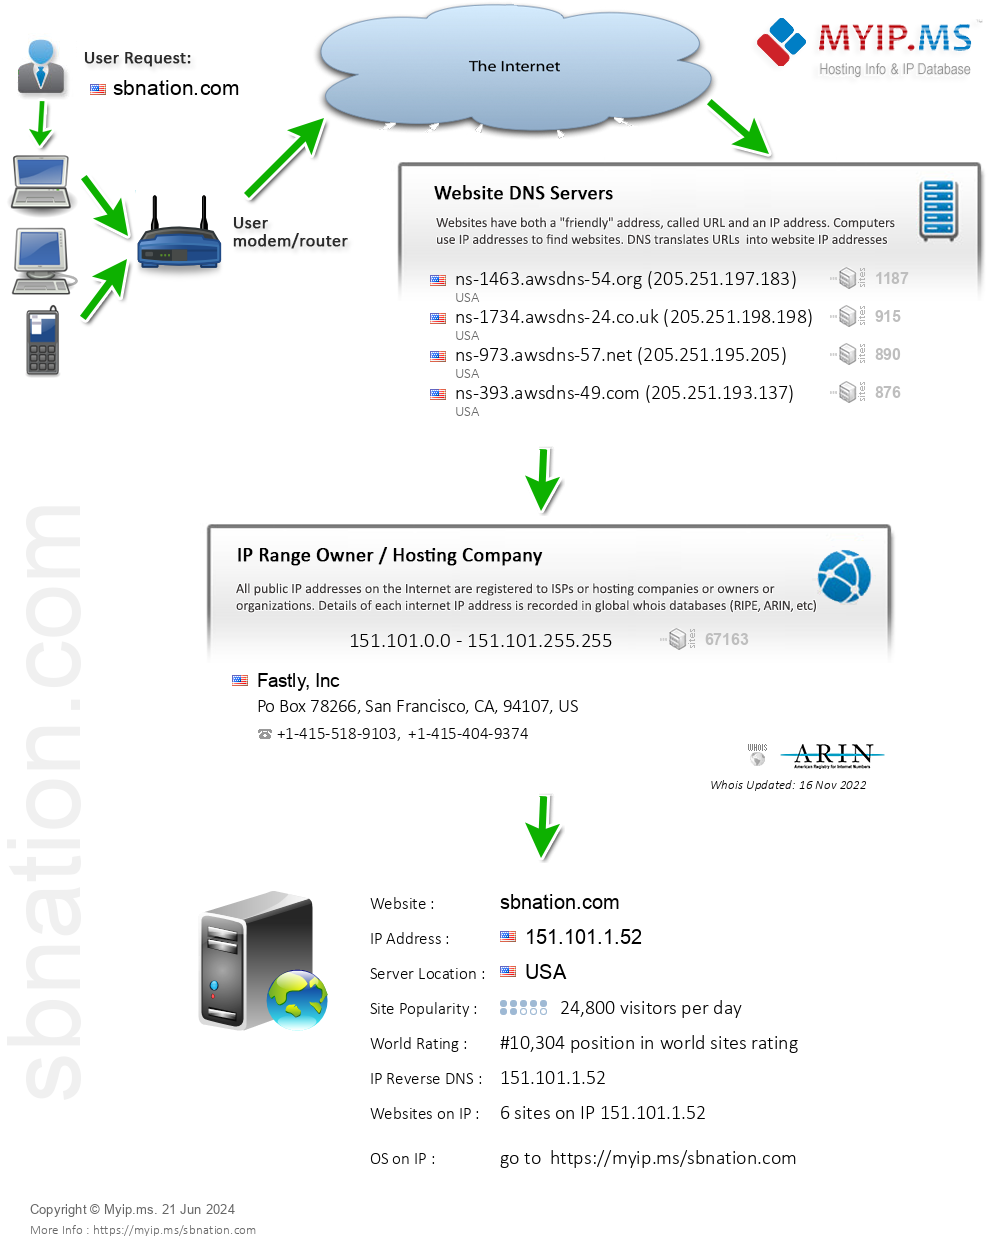 Sbnation.com - Website Hosting Visual IP Diagram